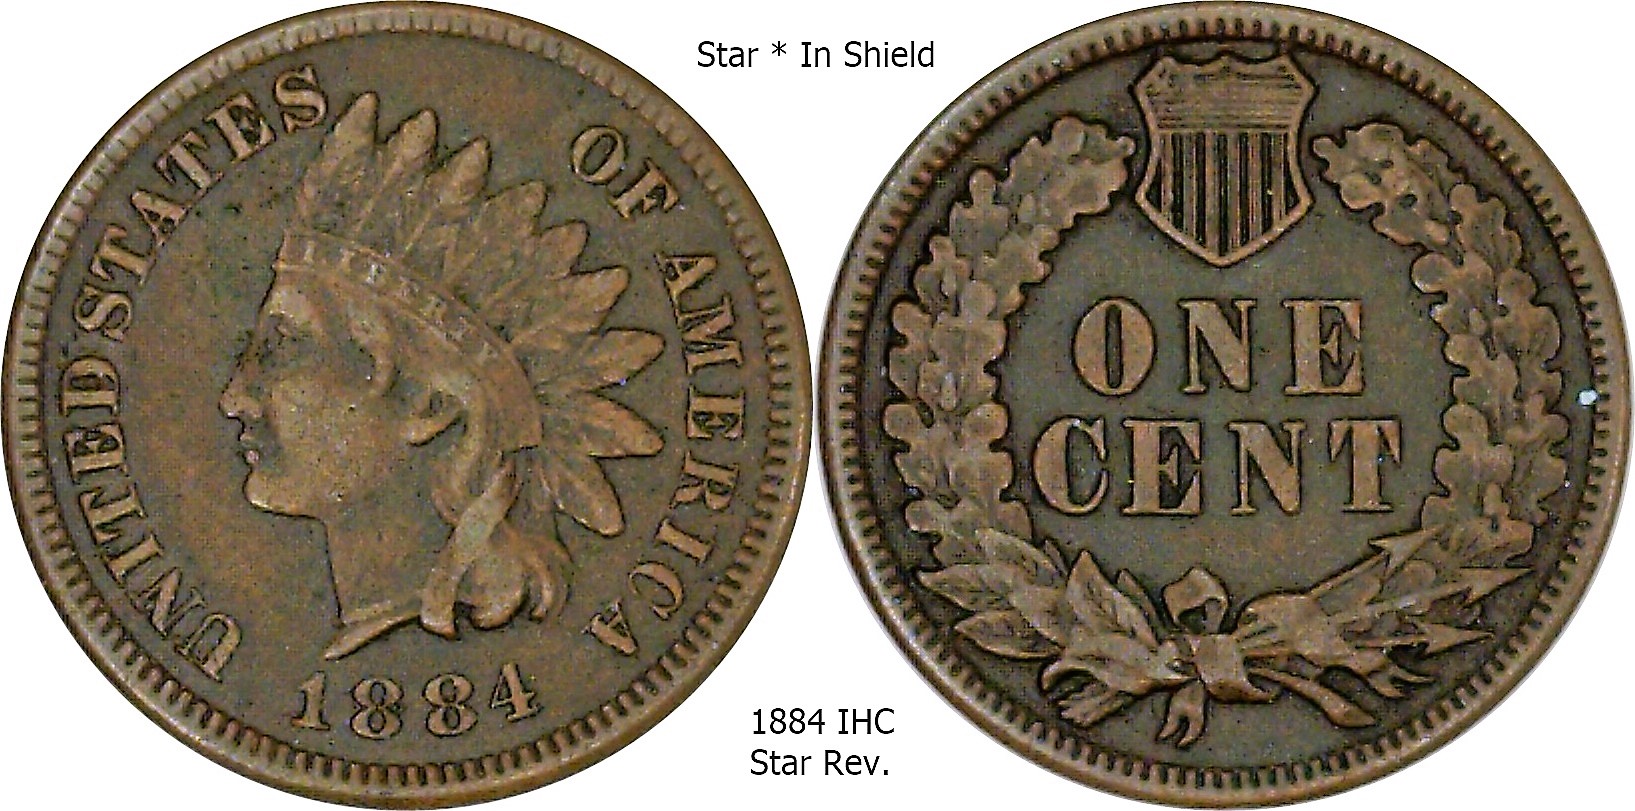 1884 IHC Star in shield.jpg